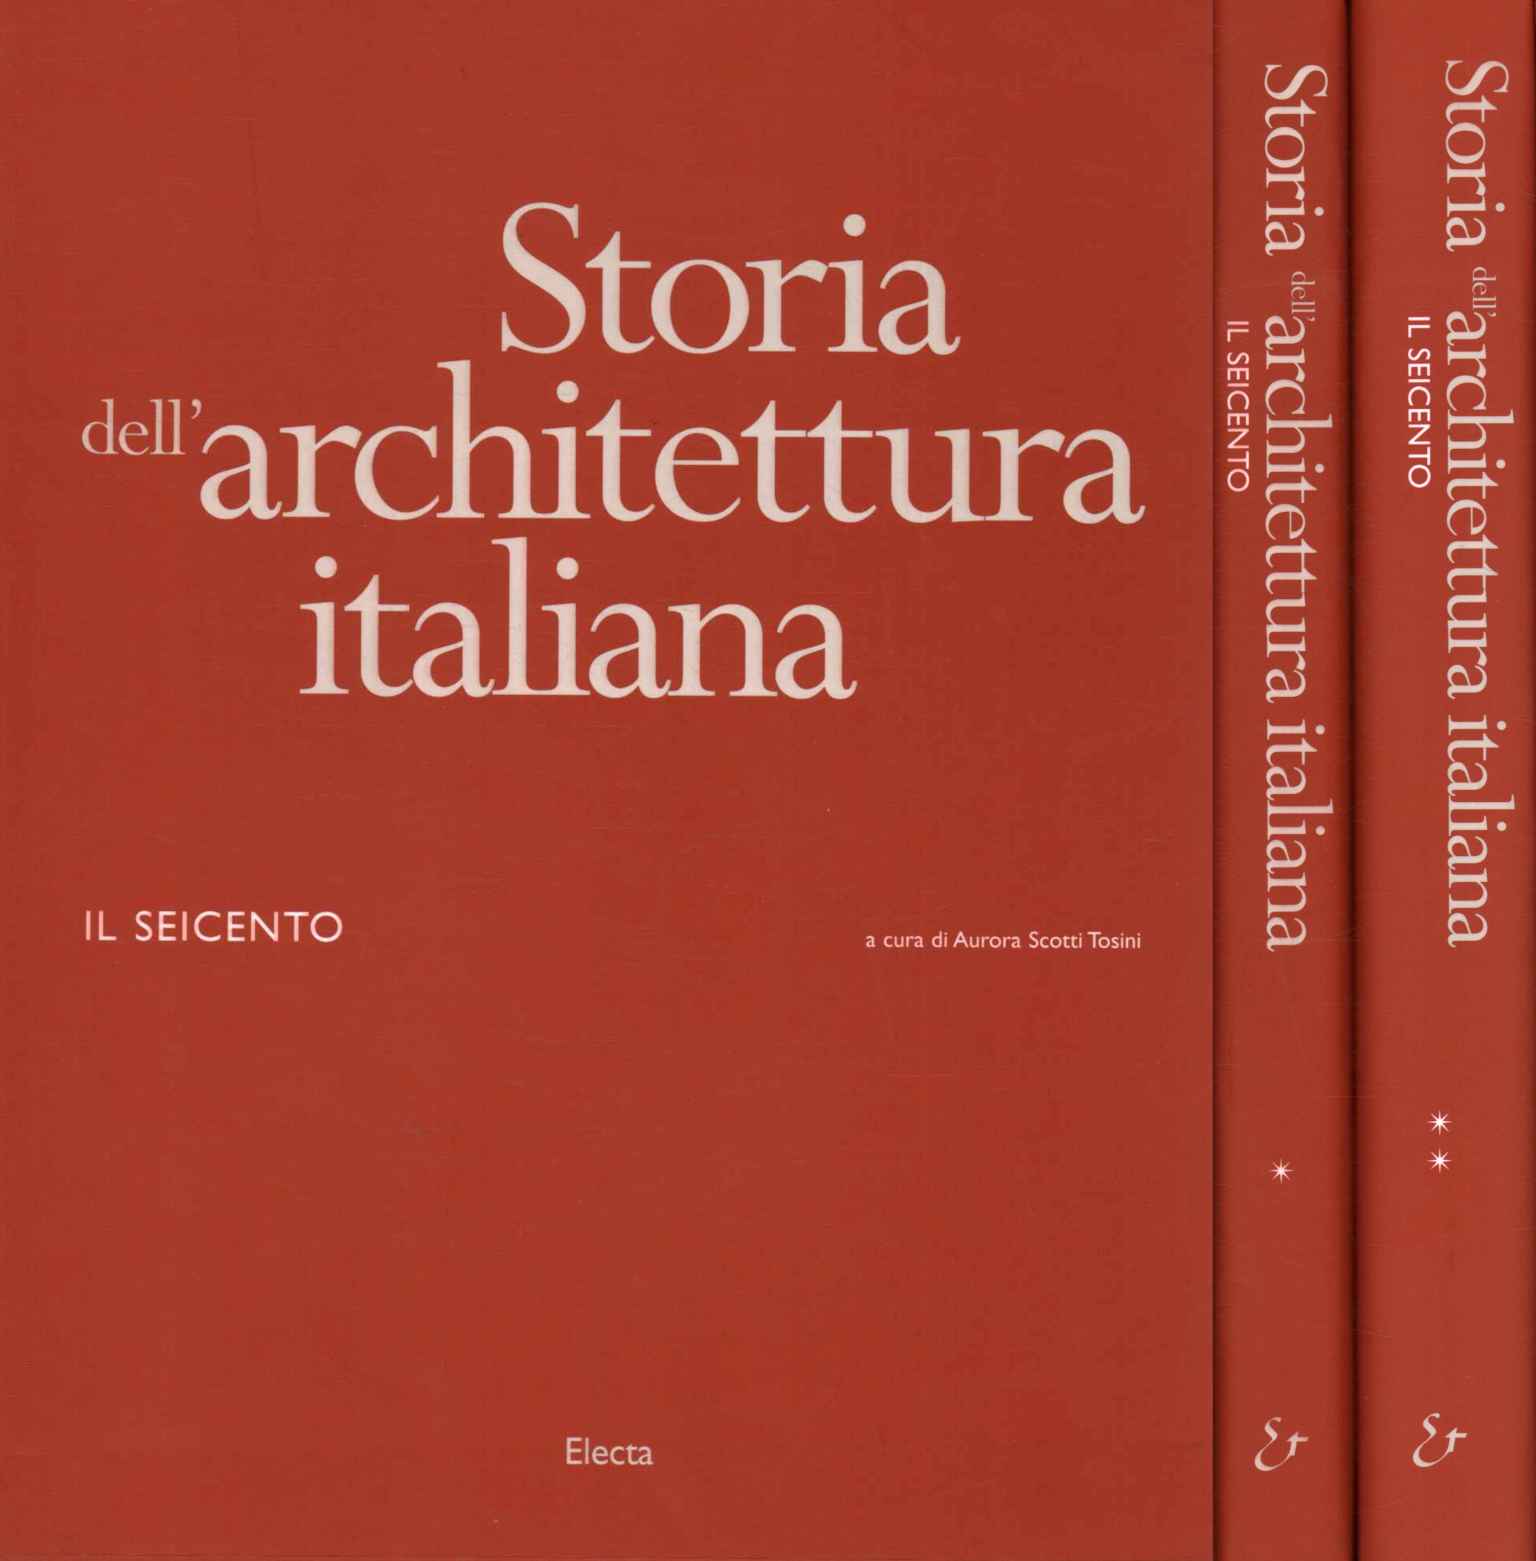 Geschichte der italienischen Architektur.%,Geschichte der italienischen Architektur.%,Geschichte der italienischen Architektur.%